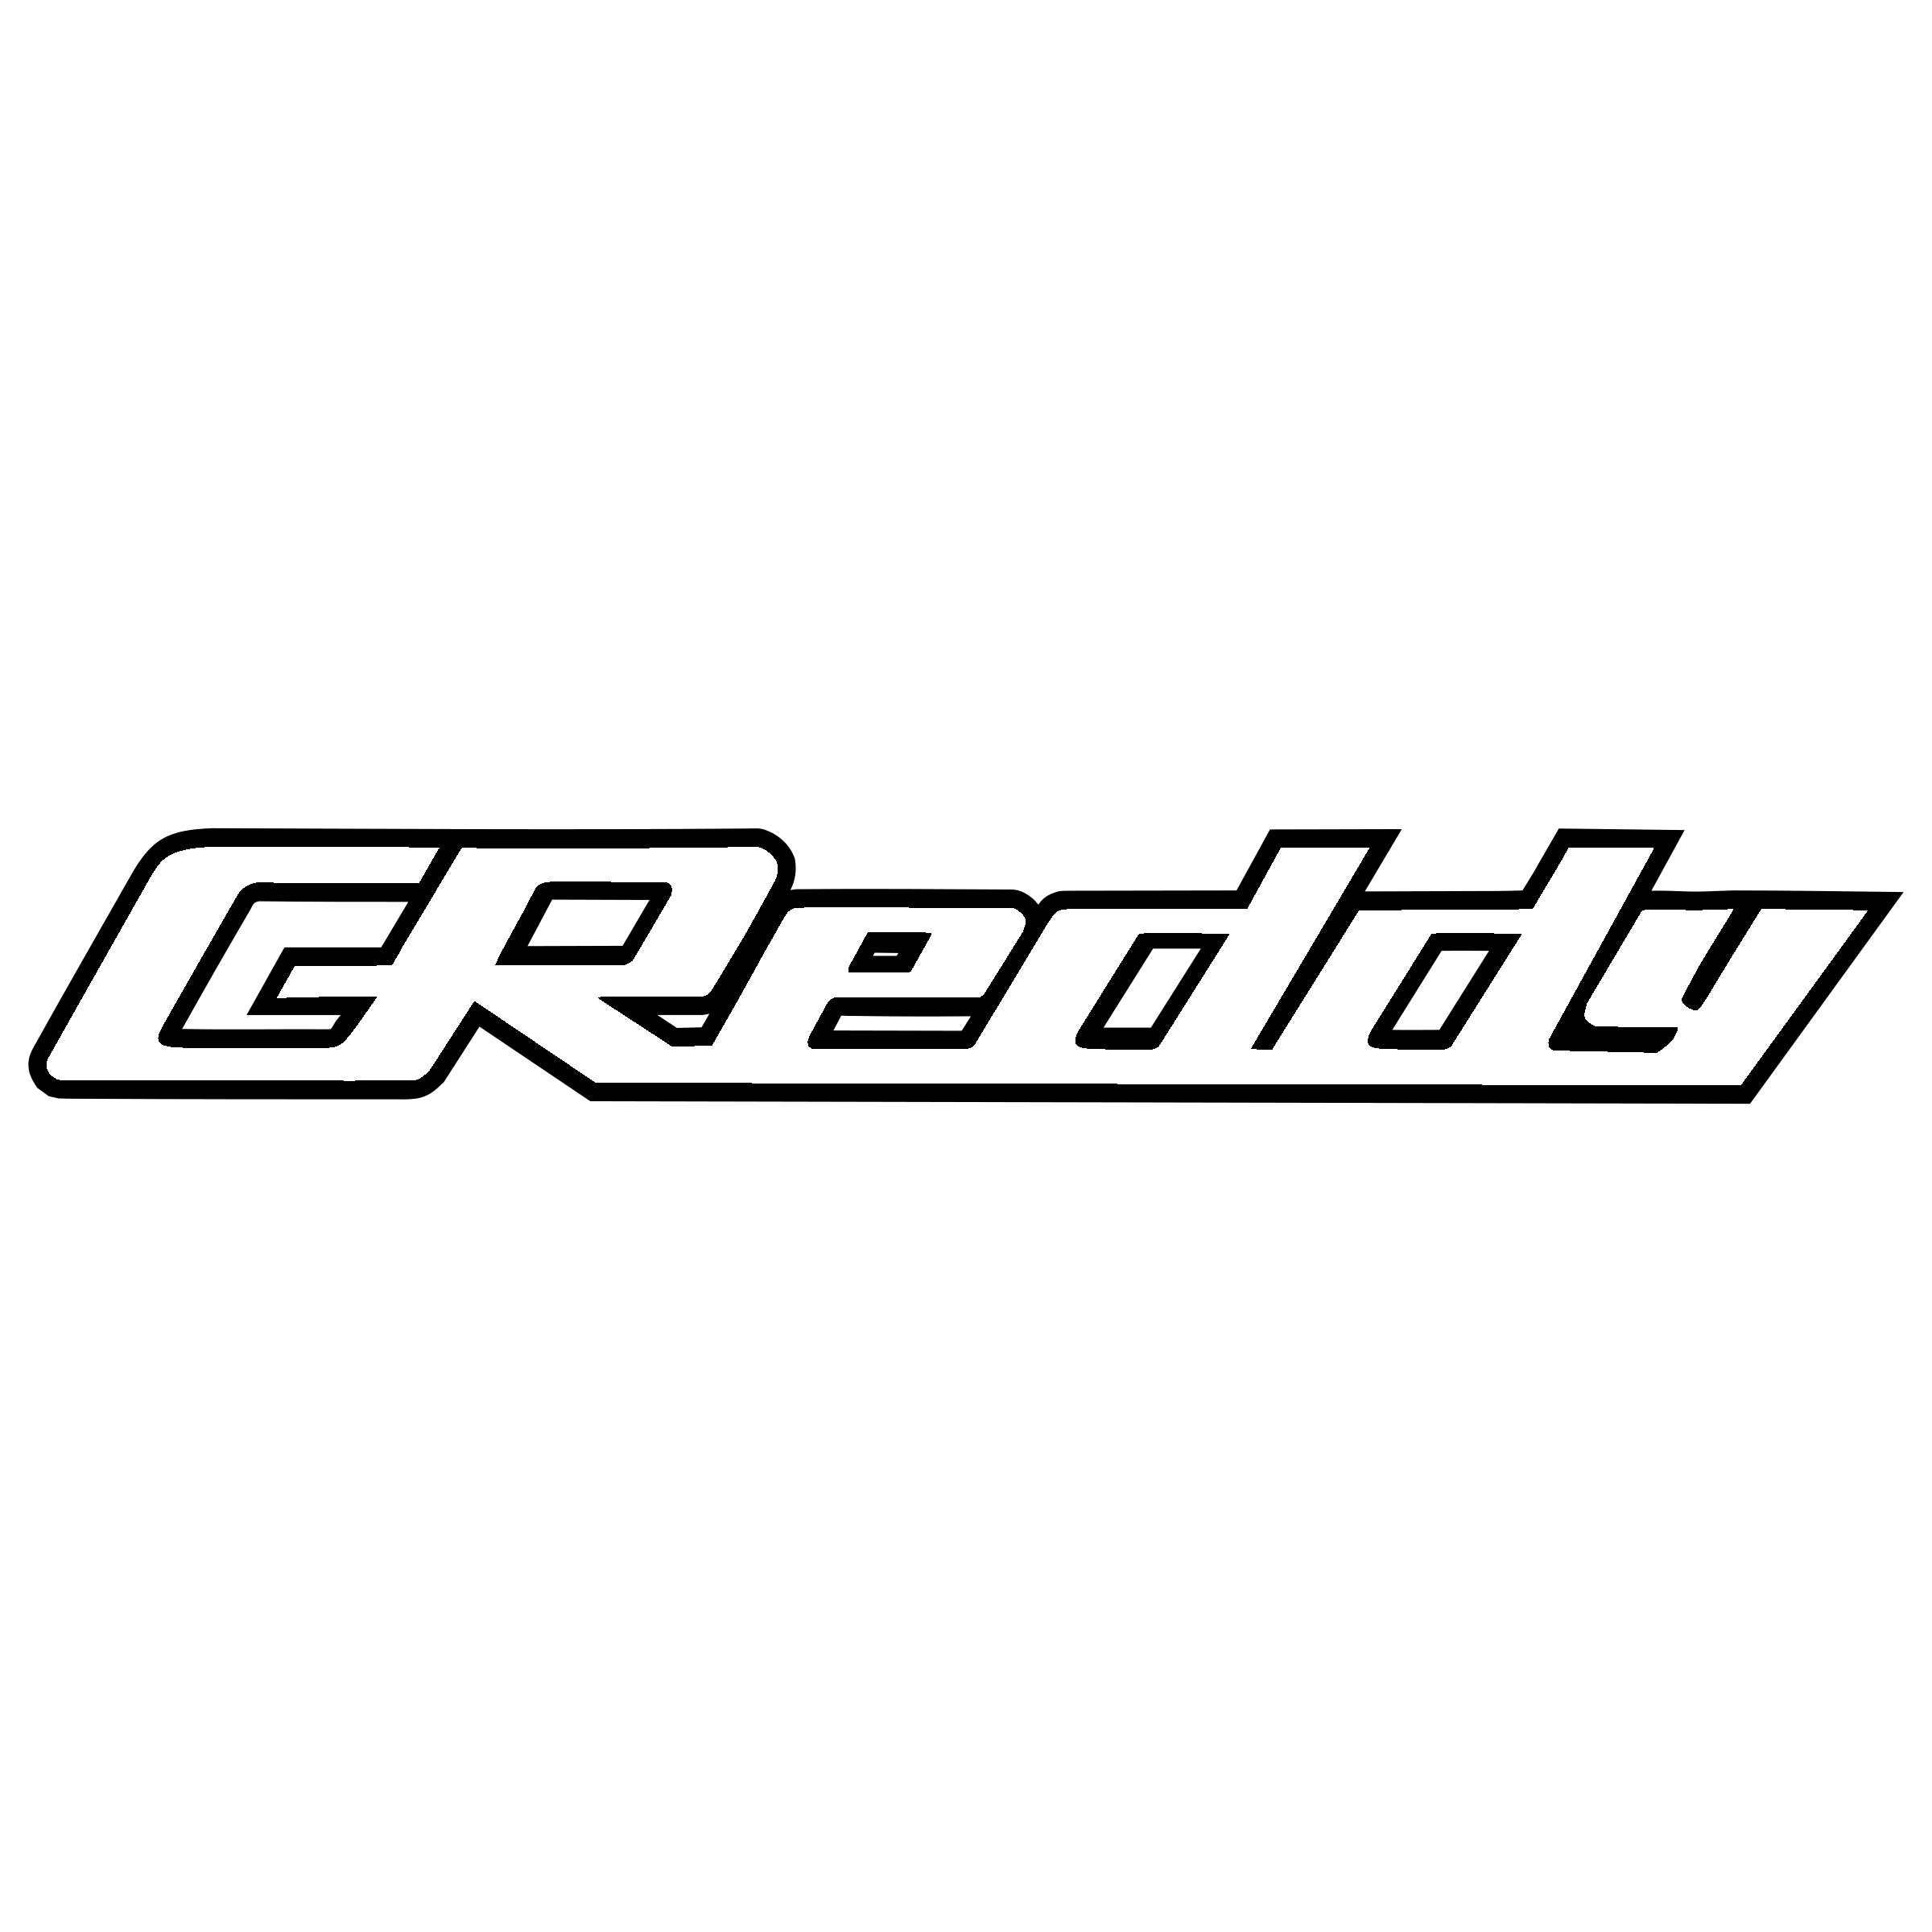 Greddy Logo - GReddy Logo PNG Transparent & SVG Vector - Freebie Supply